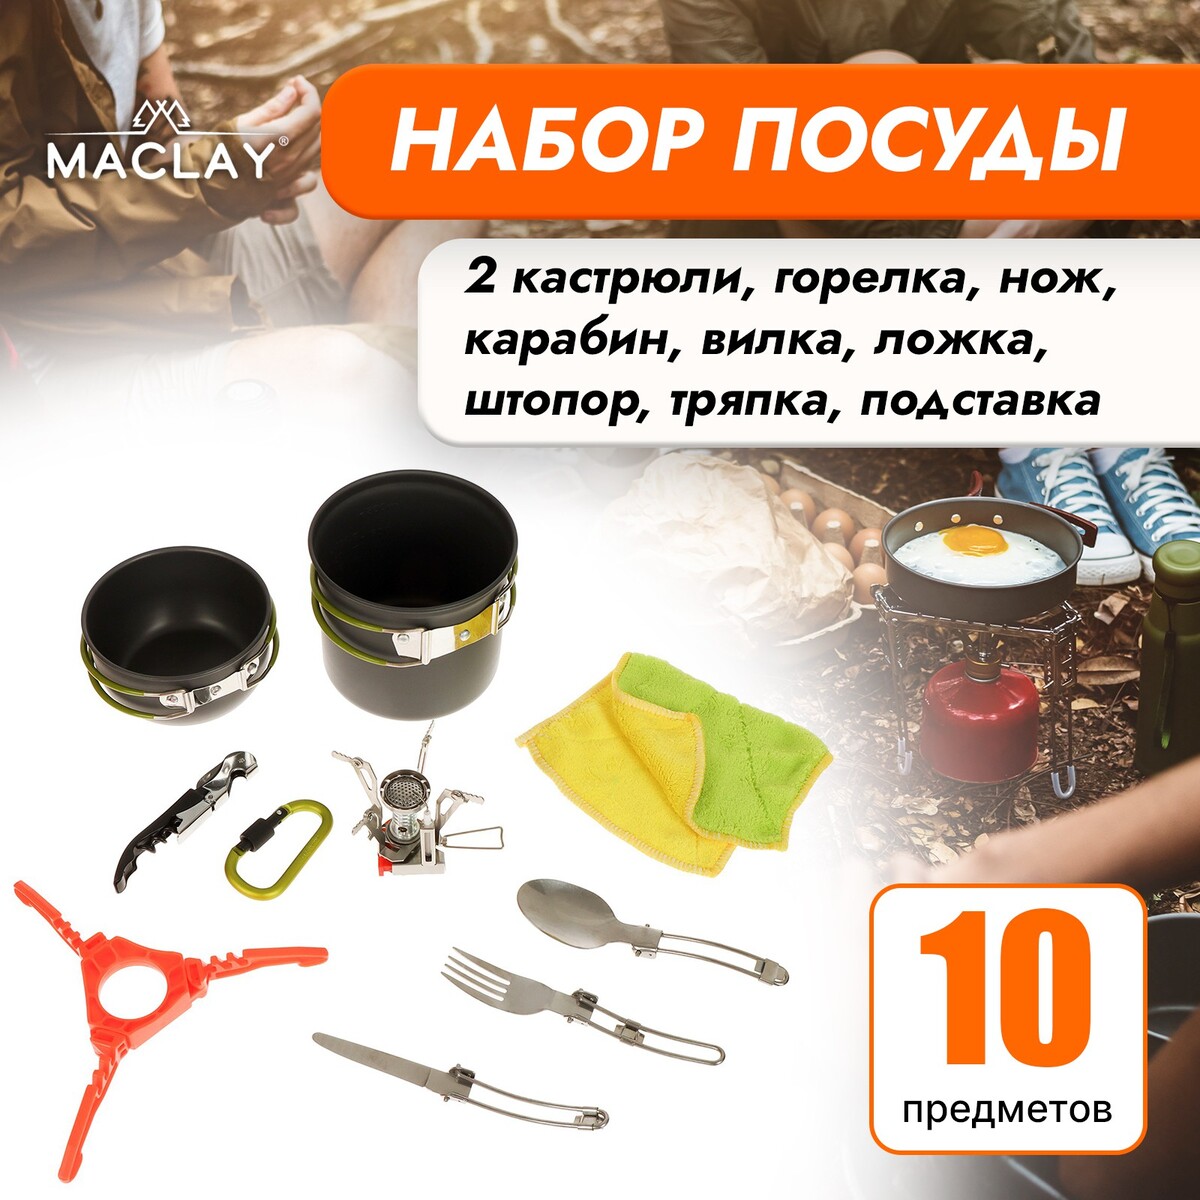 Набор туристической посуды maclay: 2 кастрюли, приборы, горелка, штопор, тряпка, карабин merimeri приборы